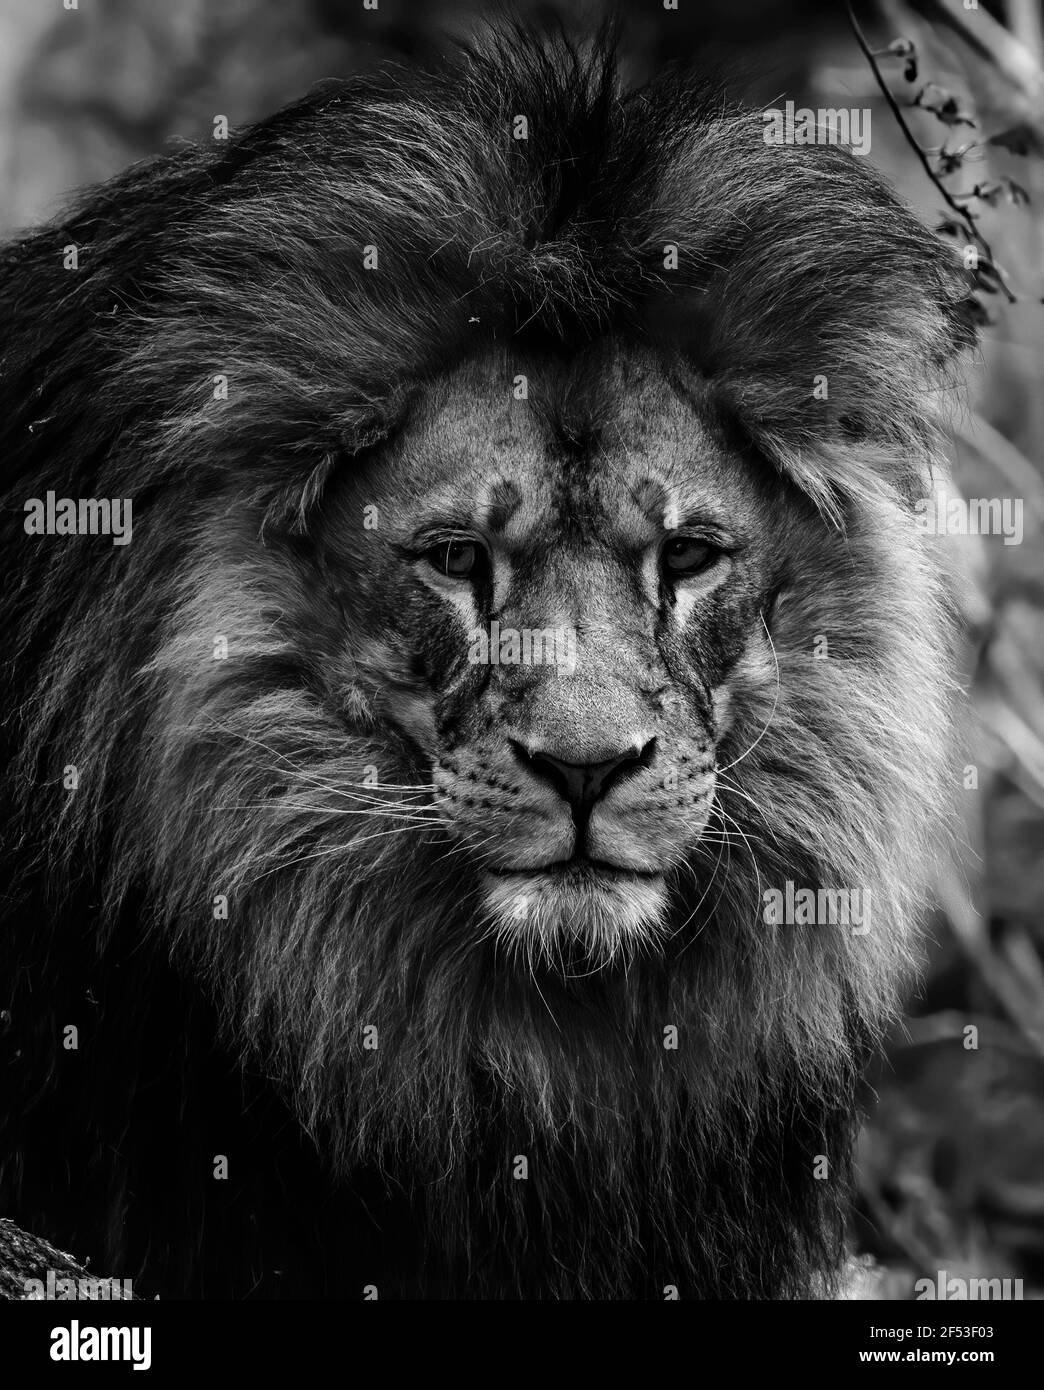 African lion close up face portrait Black and white symmetric ...